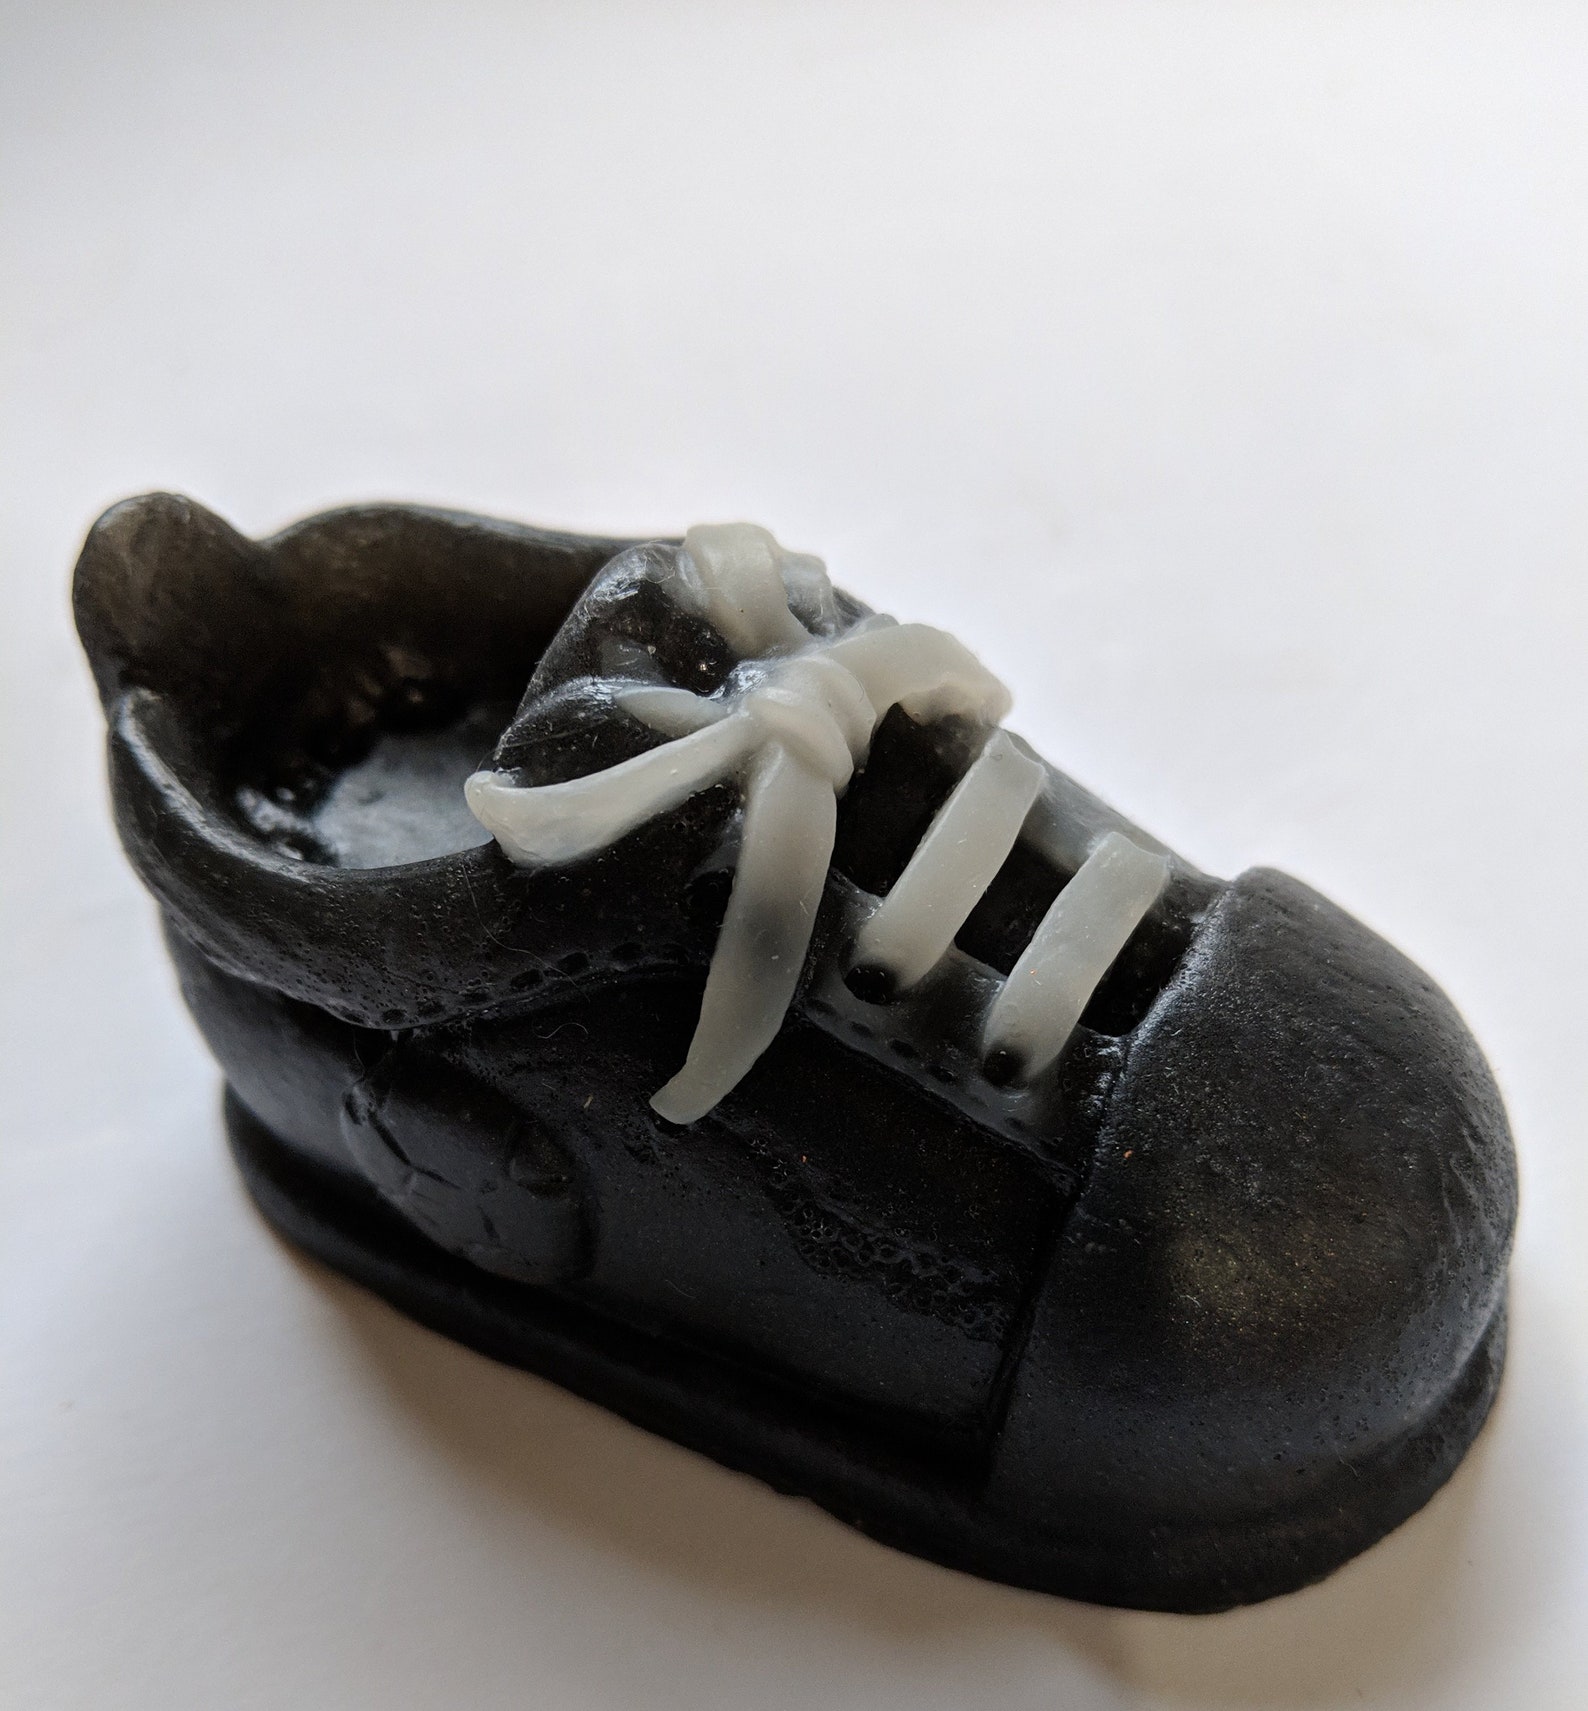 Shoe Soap Sneaker Soap Tennis Shoe Soap | Etsy